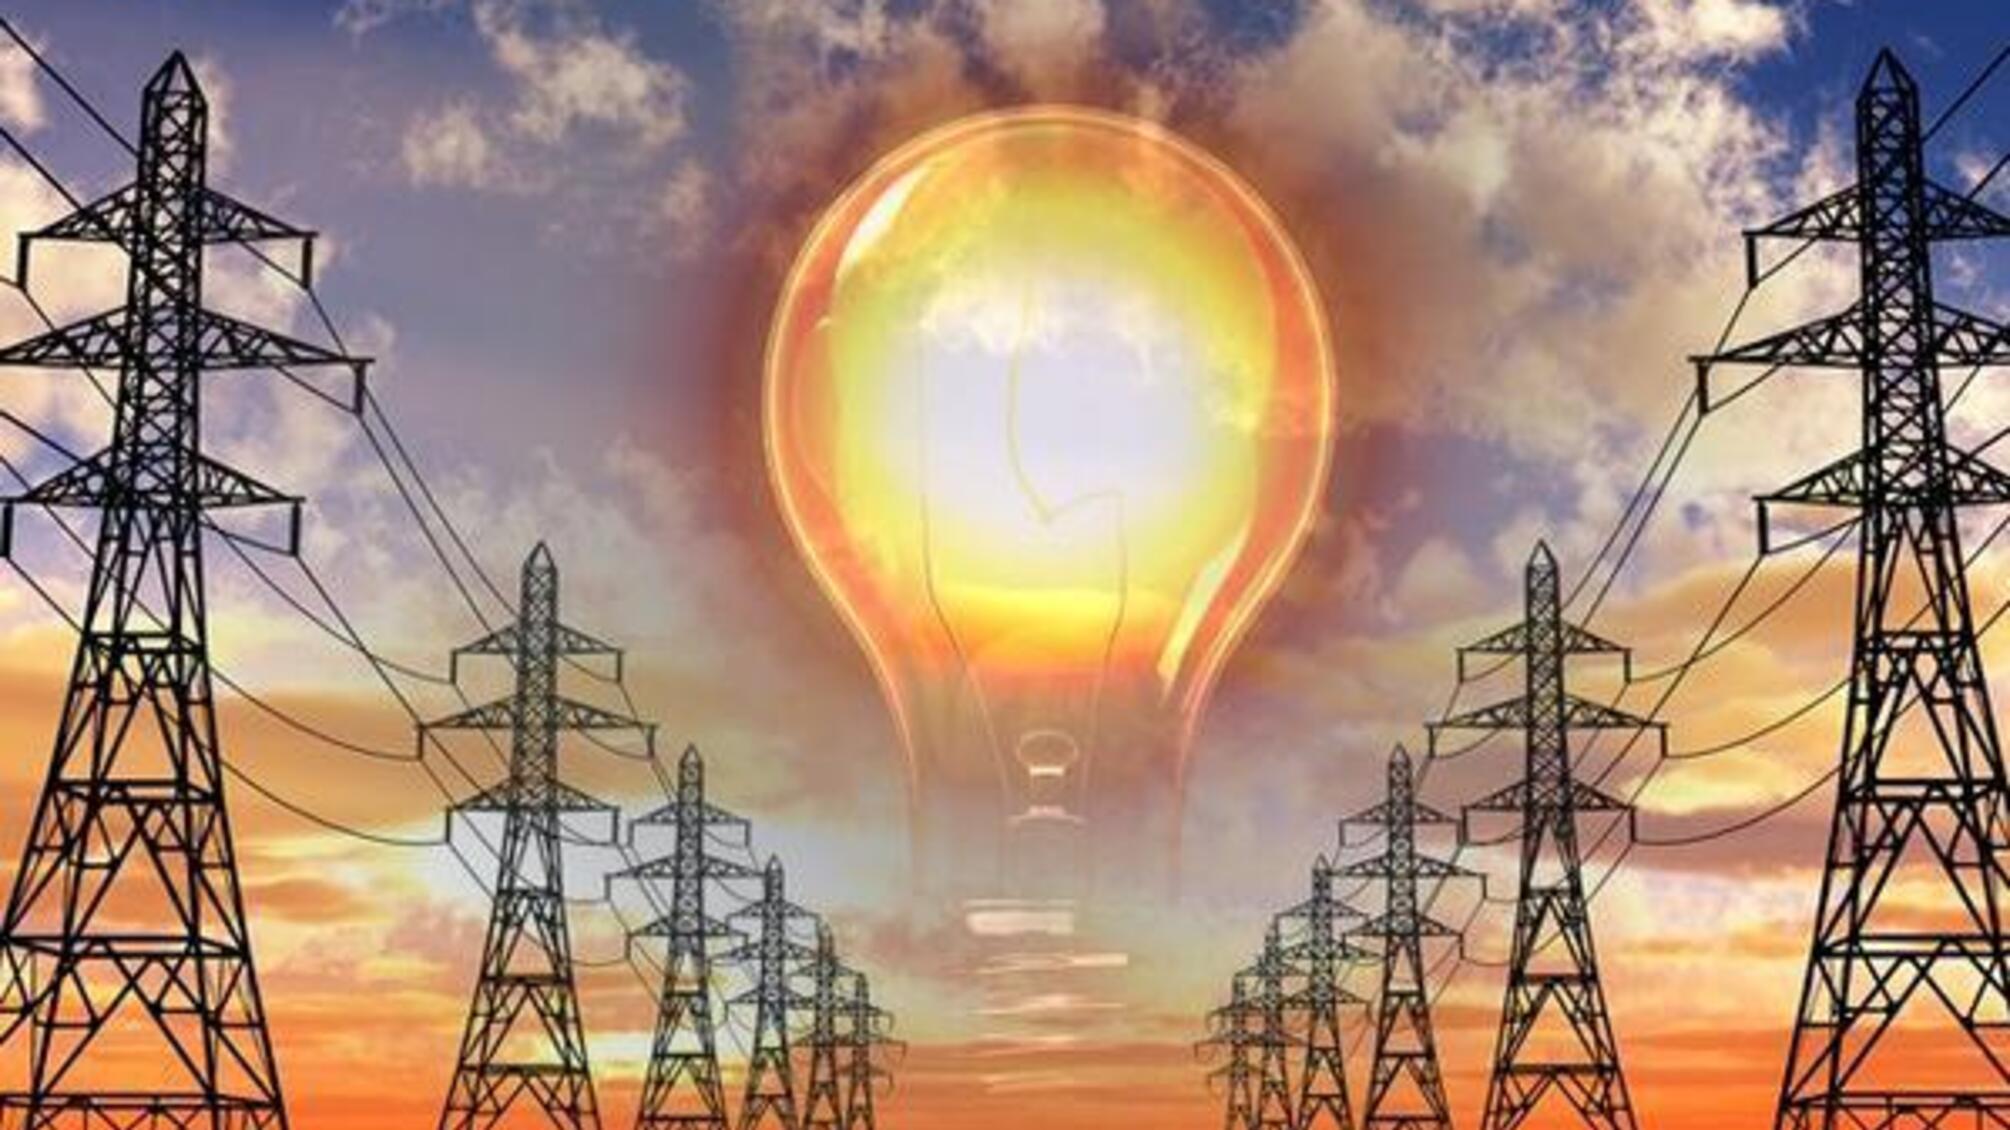 Украинцы будут без света по семь часов подряд: какова ситуация с электроэнергией